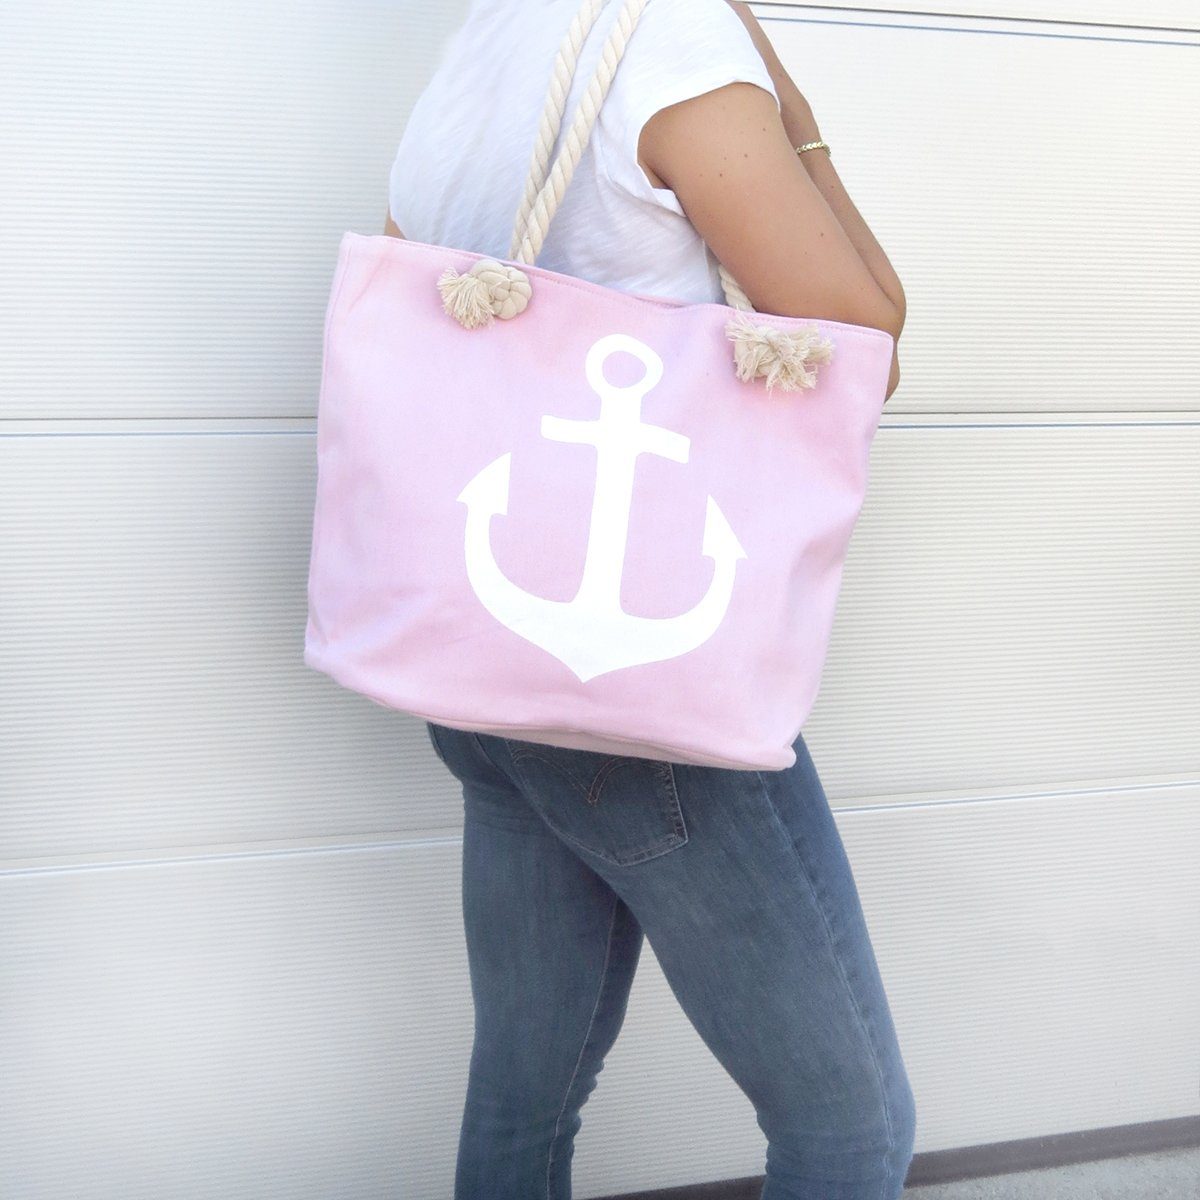 Beachbag Reißverschluss Originelli Anker Maritim, Uni Umhängetasche Innentasche Sonia rosa mit Shopper "Marie" kleine Strandtasche